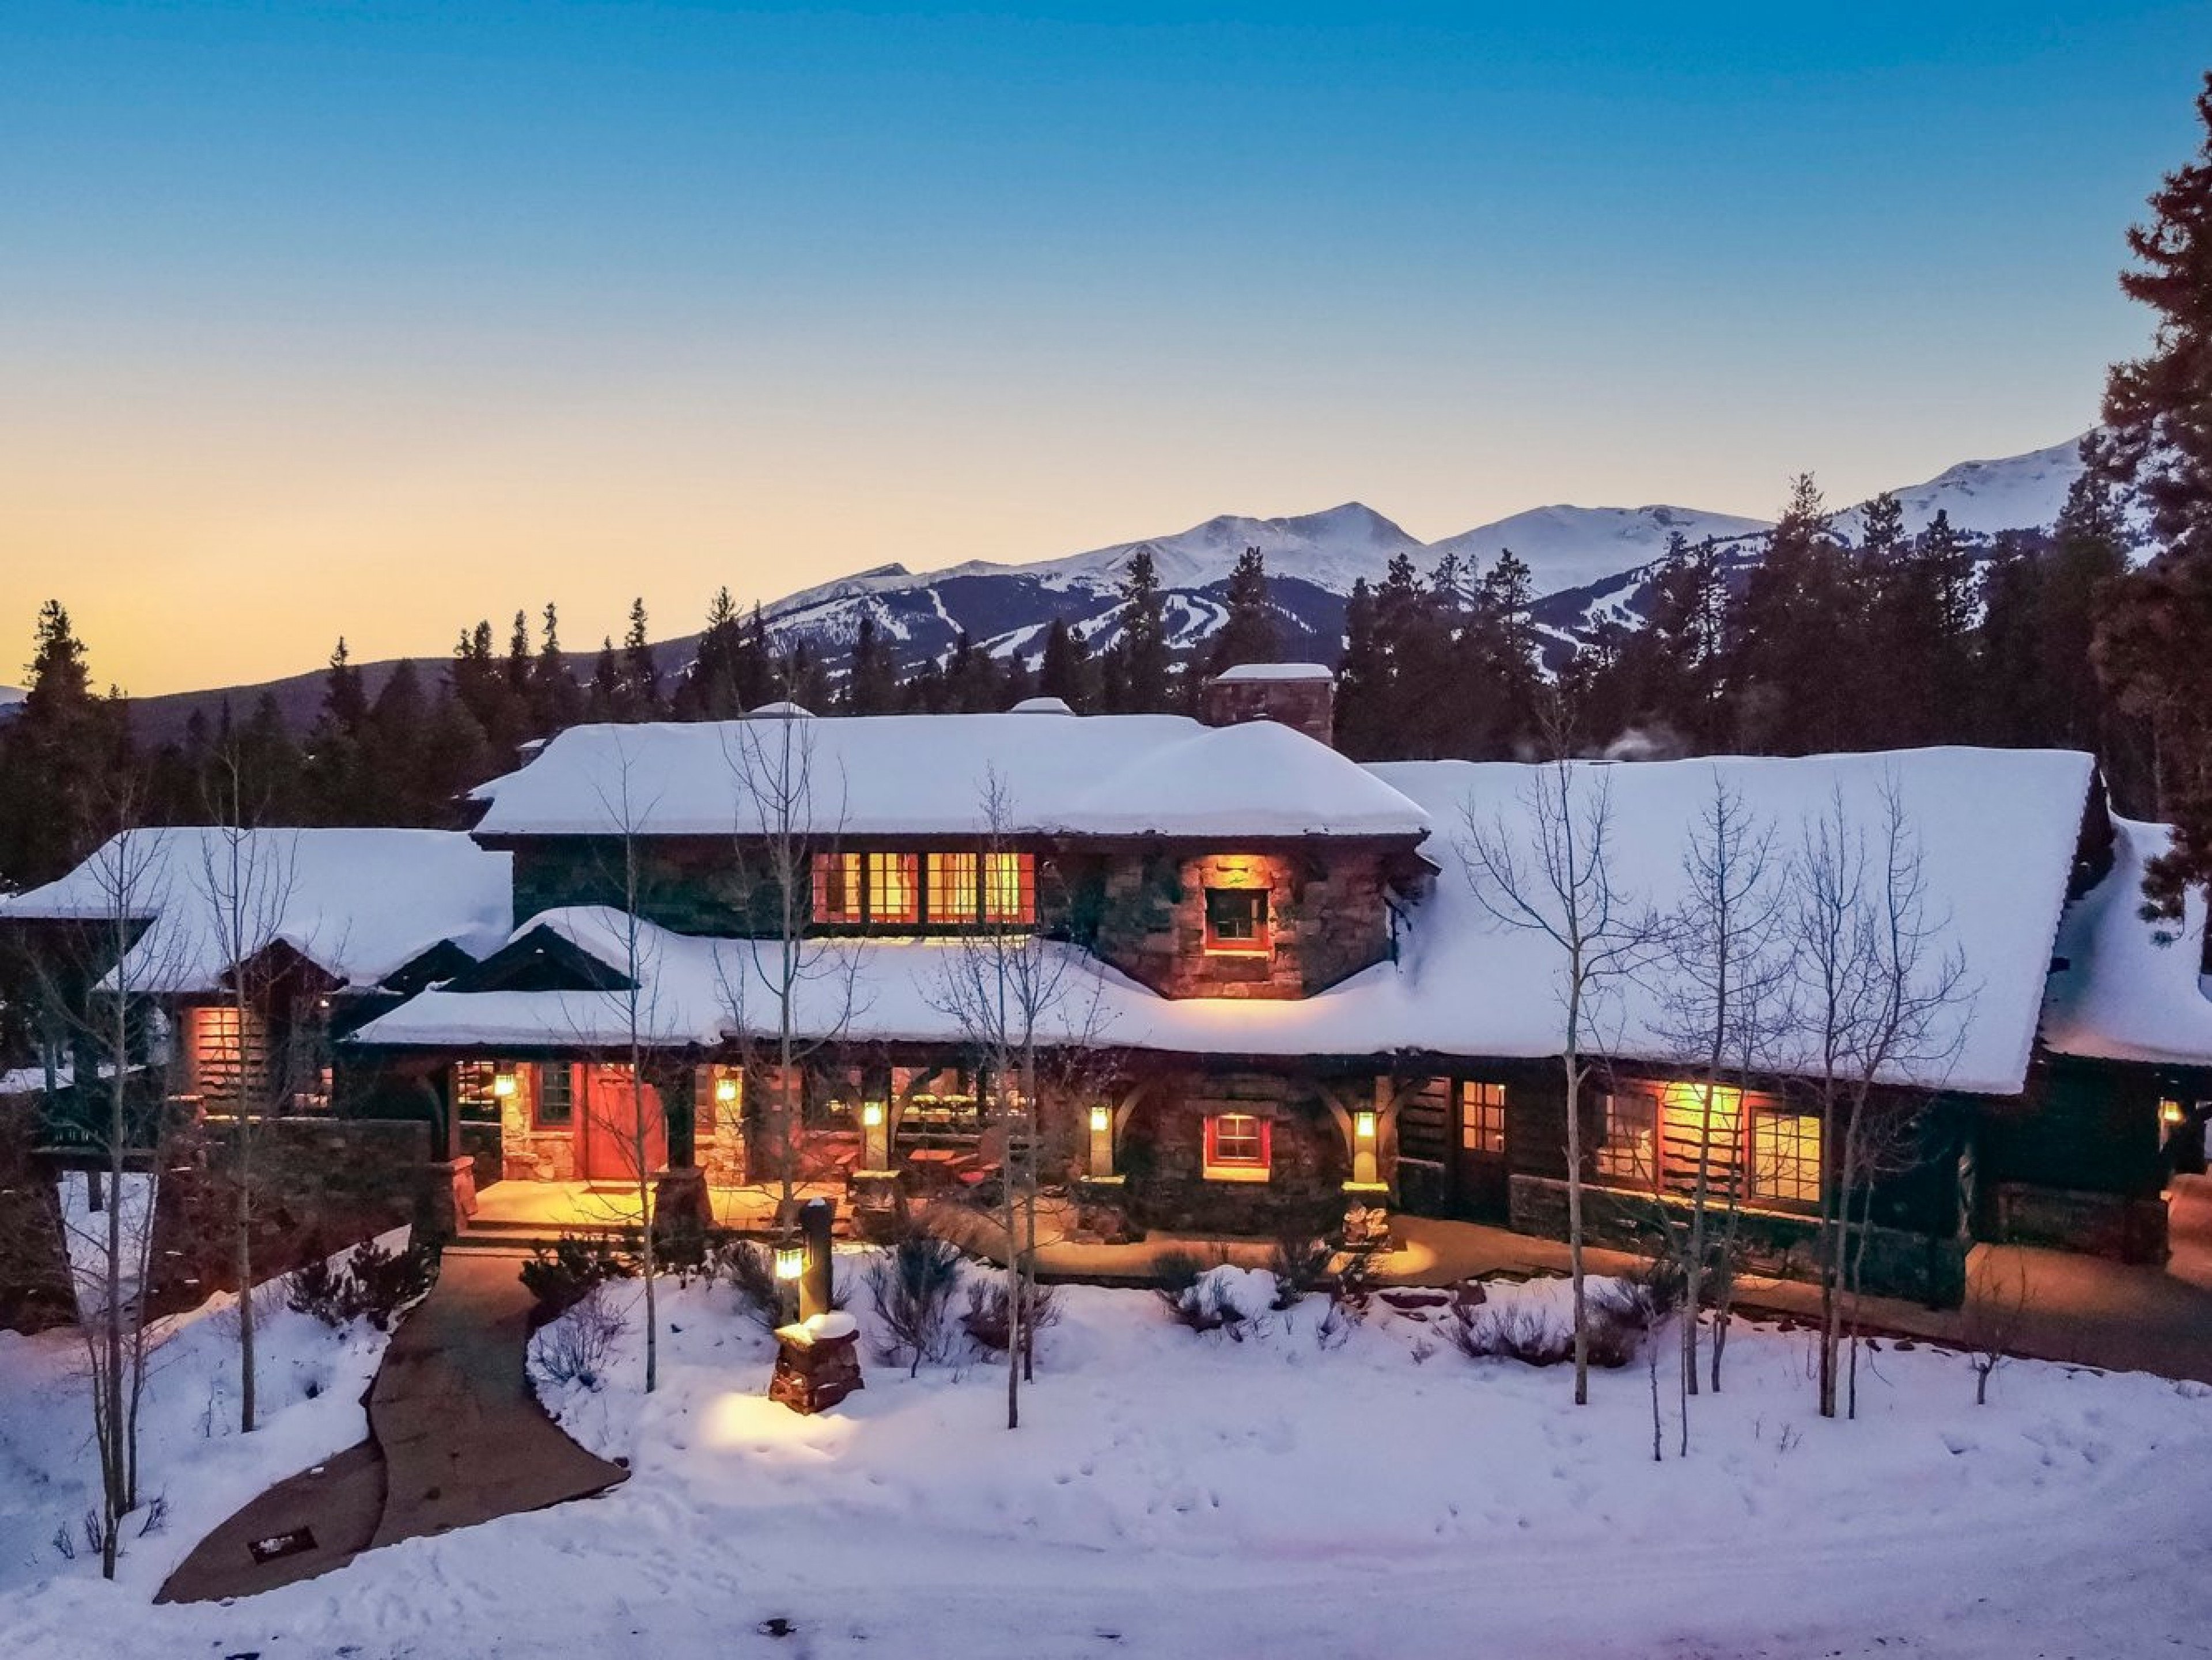 Breckenridge 22 cabin rentals for the festive season